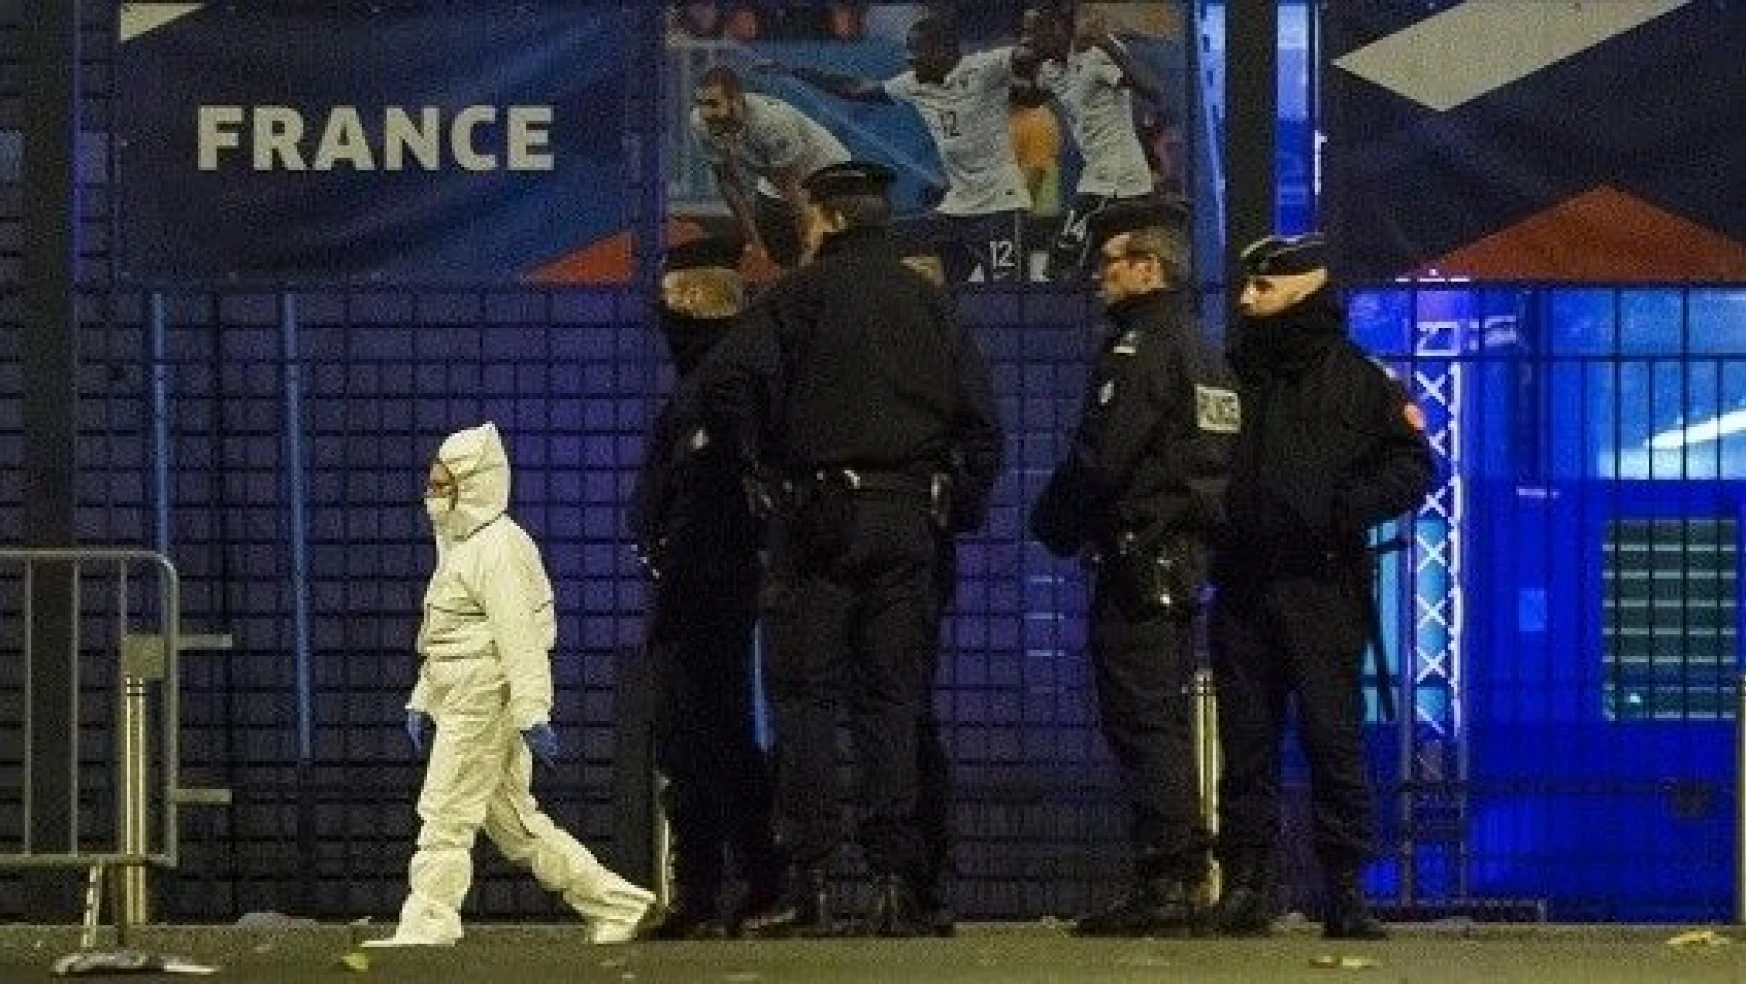 Fransız polisi 3. saldırganın kimliğinin peşinde